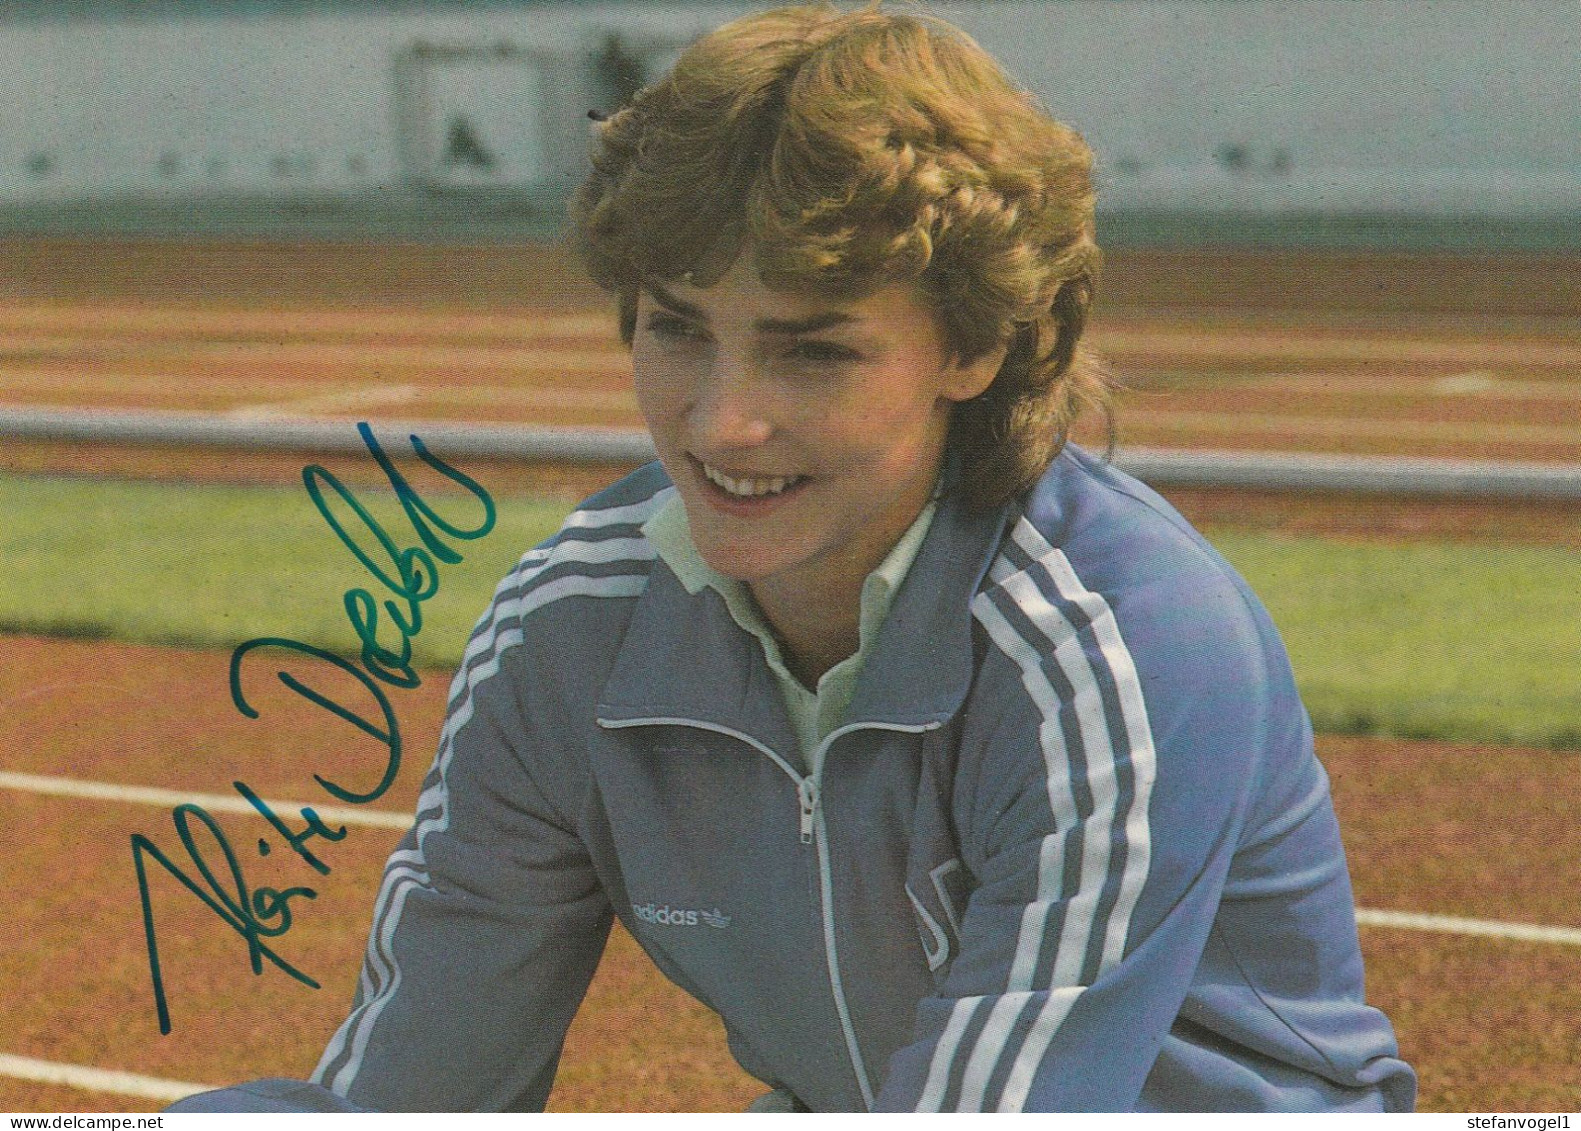 Heike Drechsler Leichtathletik Olympiateilnehmerin 1988, 1992, 2000 - Autografi